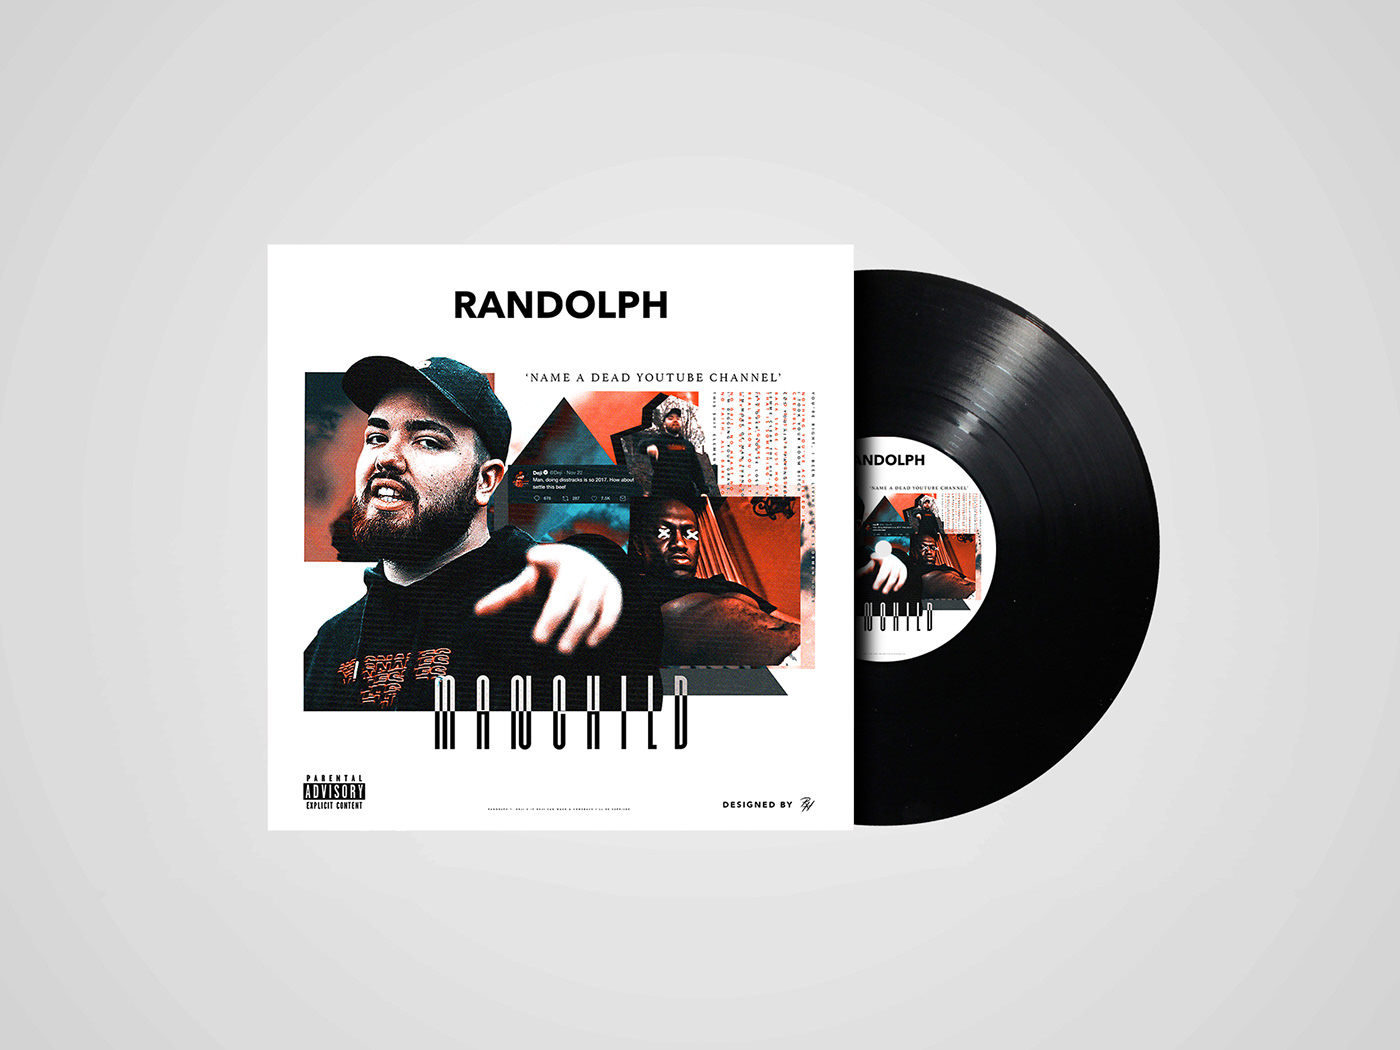 Randolph ksi ComedyShortsGamer youtube social media album artwork music graphic design  modern abstract